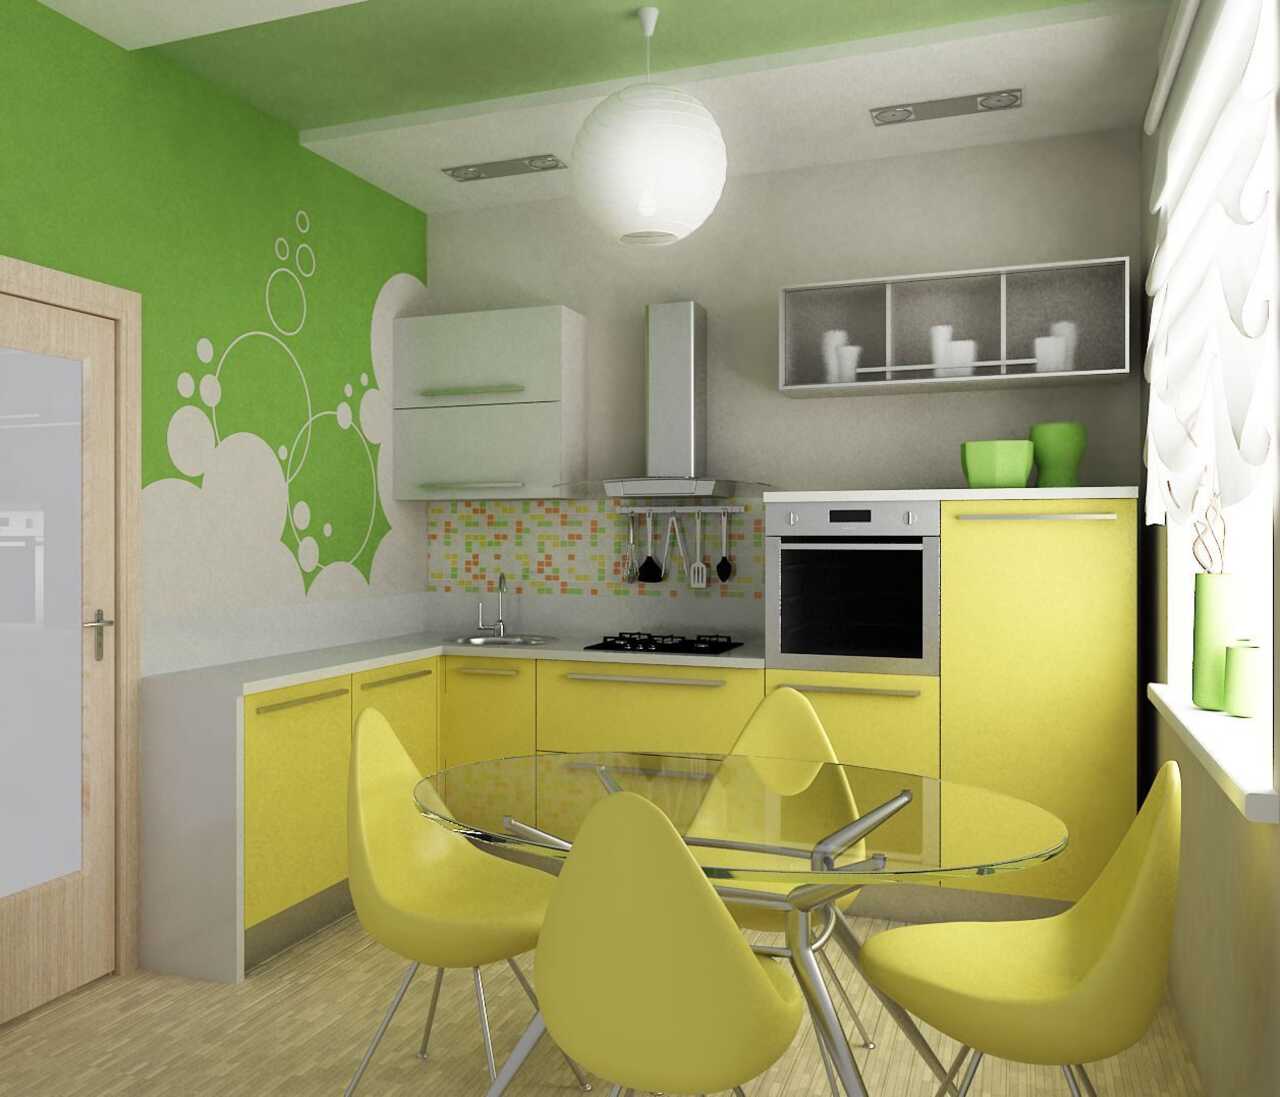 Квадратов кухня ремонт. Интерьер маленькой кухни. Кухня в желто зеленом цвете. Кухня для хрущевки. Интерьер зеленой кухни маленькой.